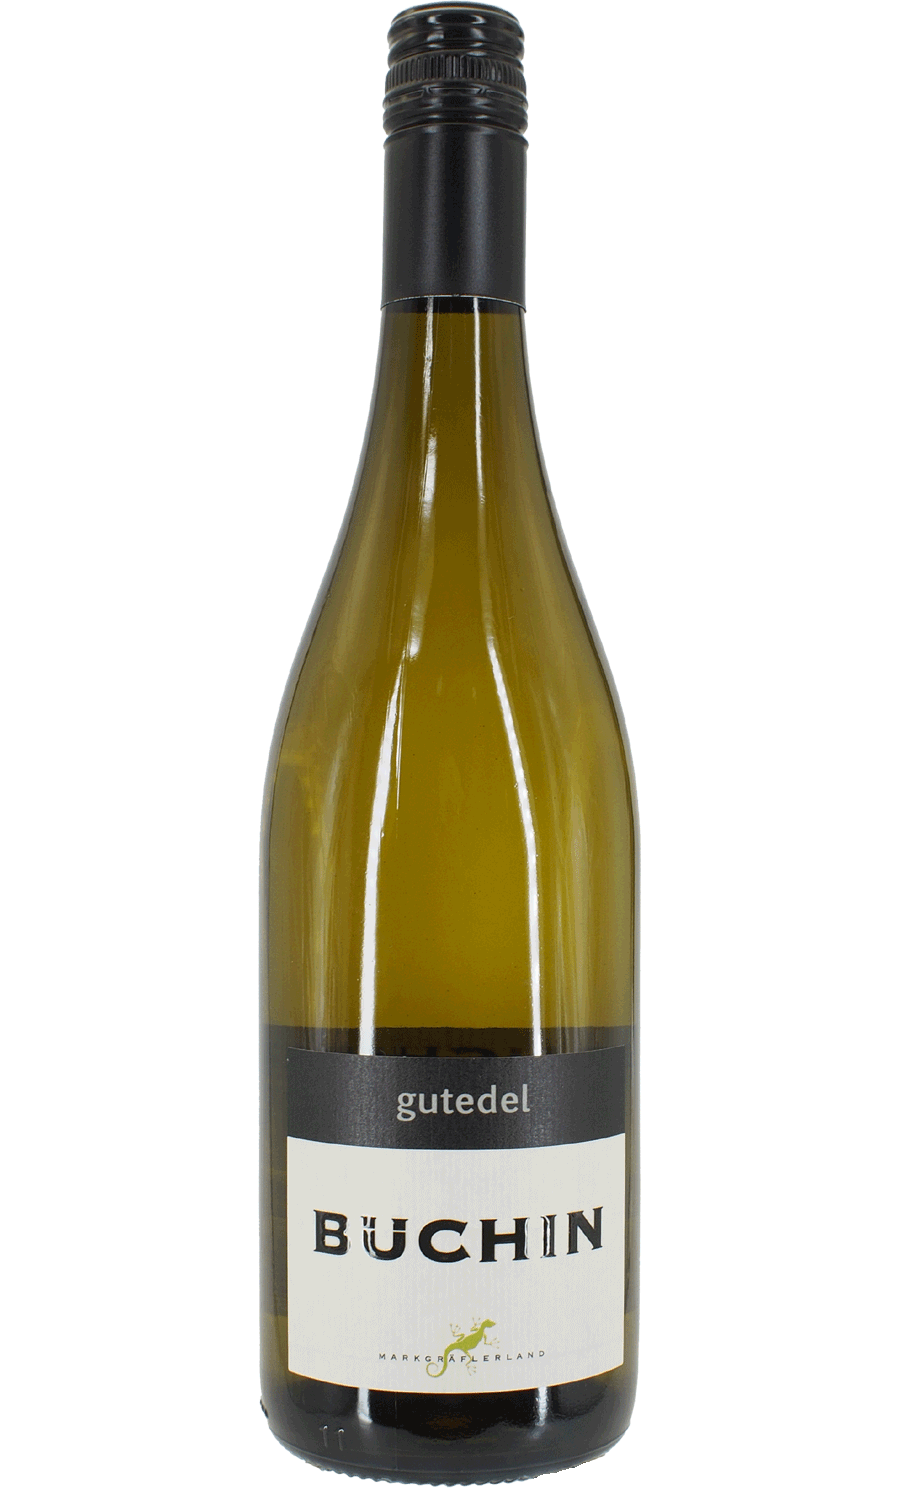 Weingut Büchin Gutedel